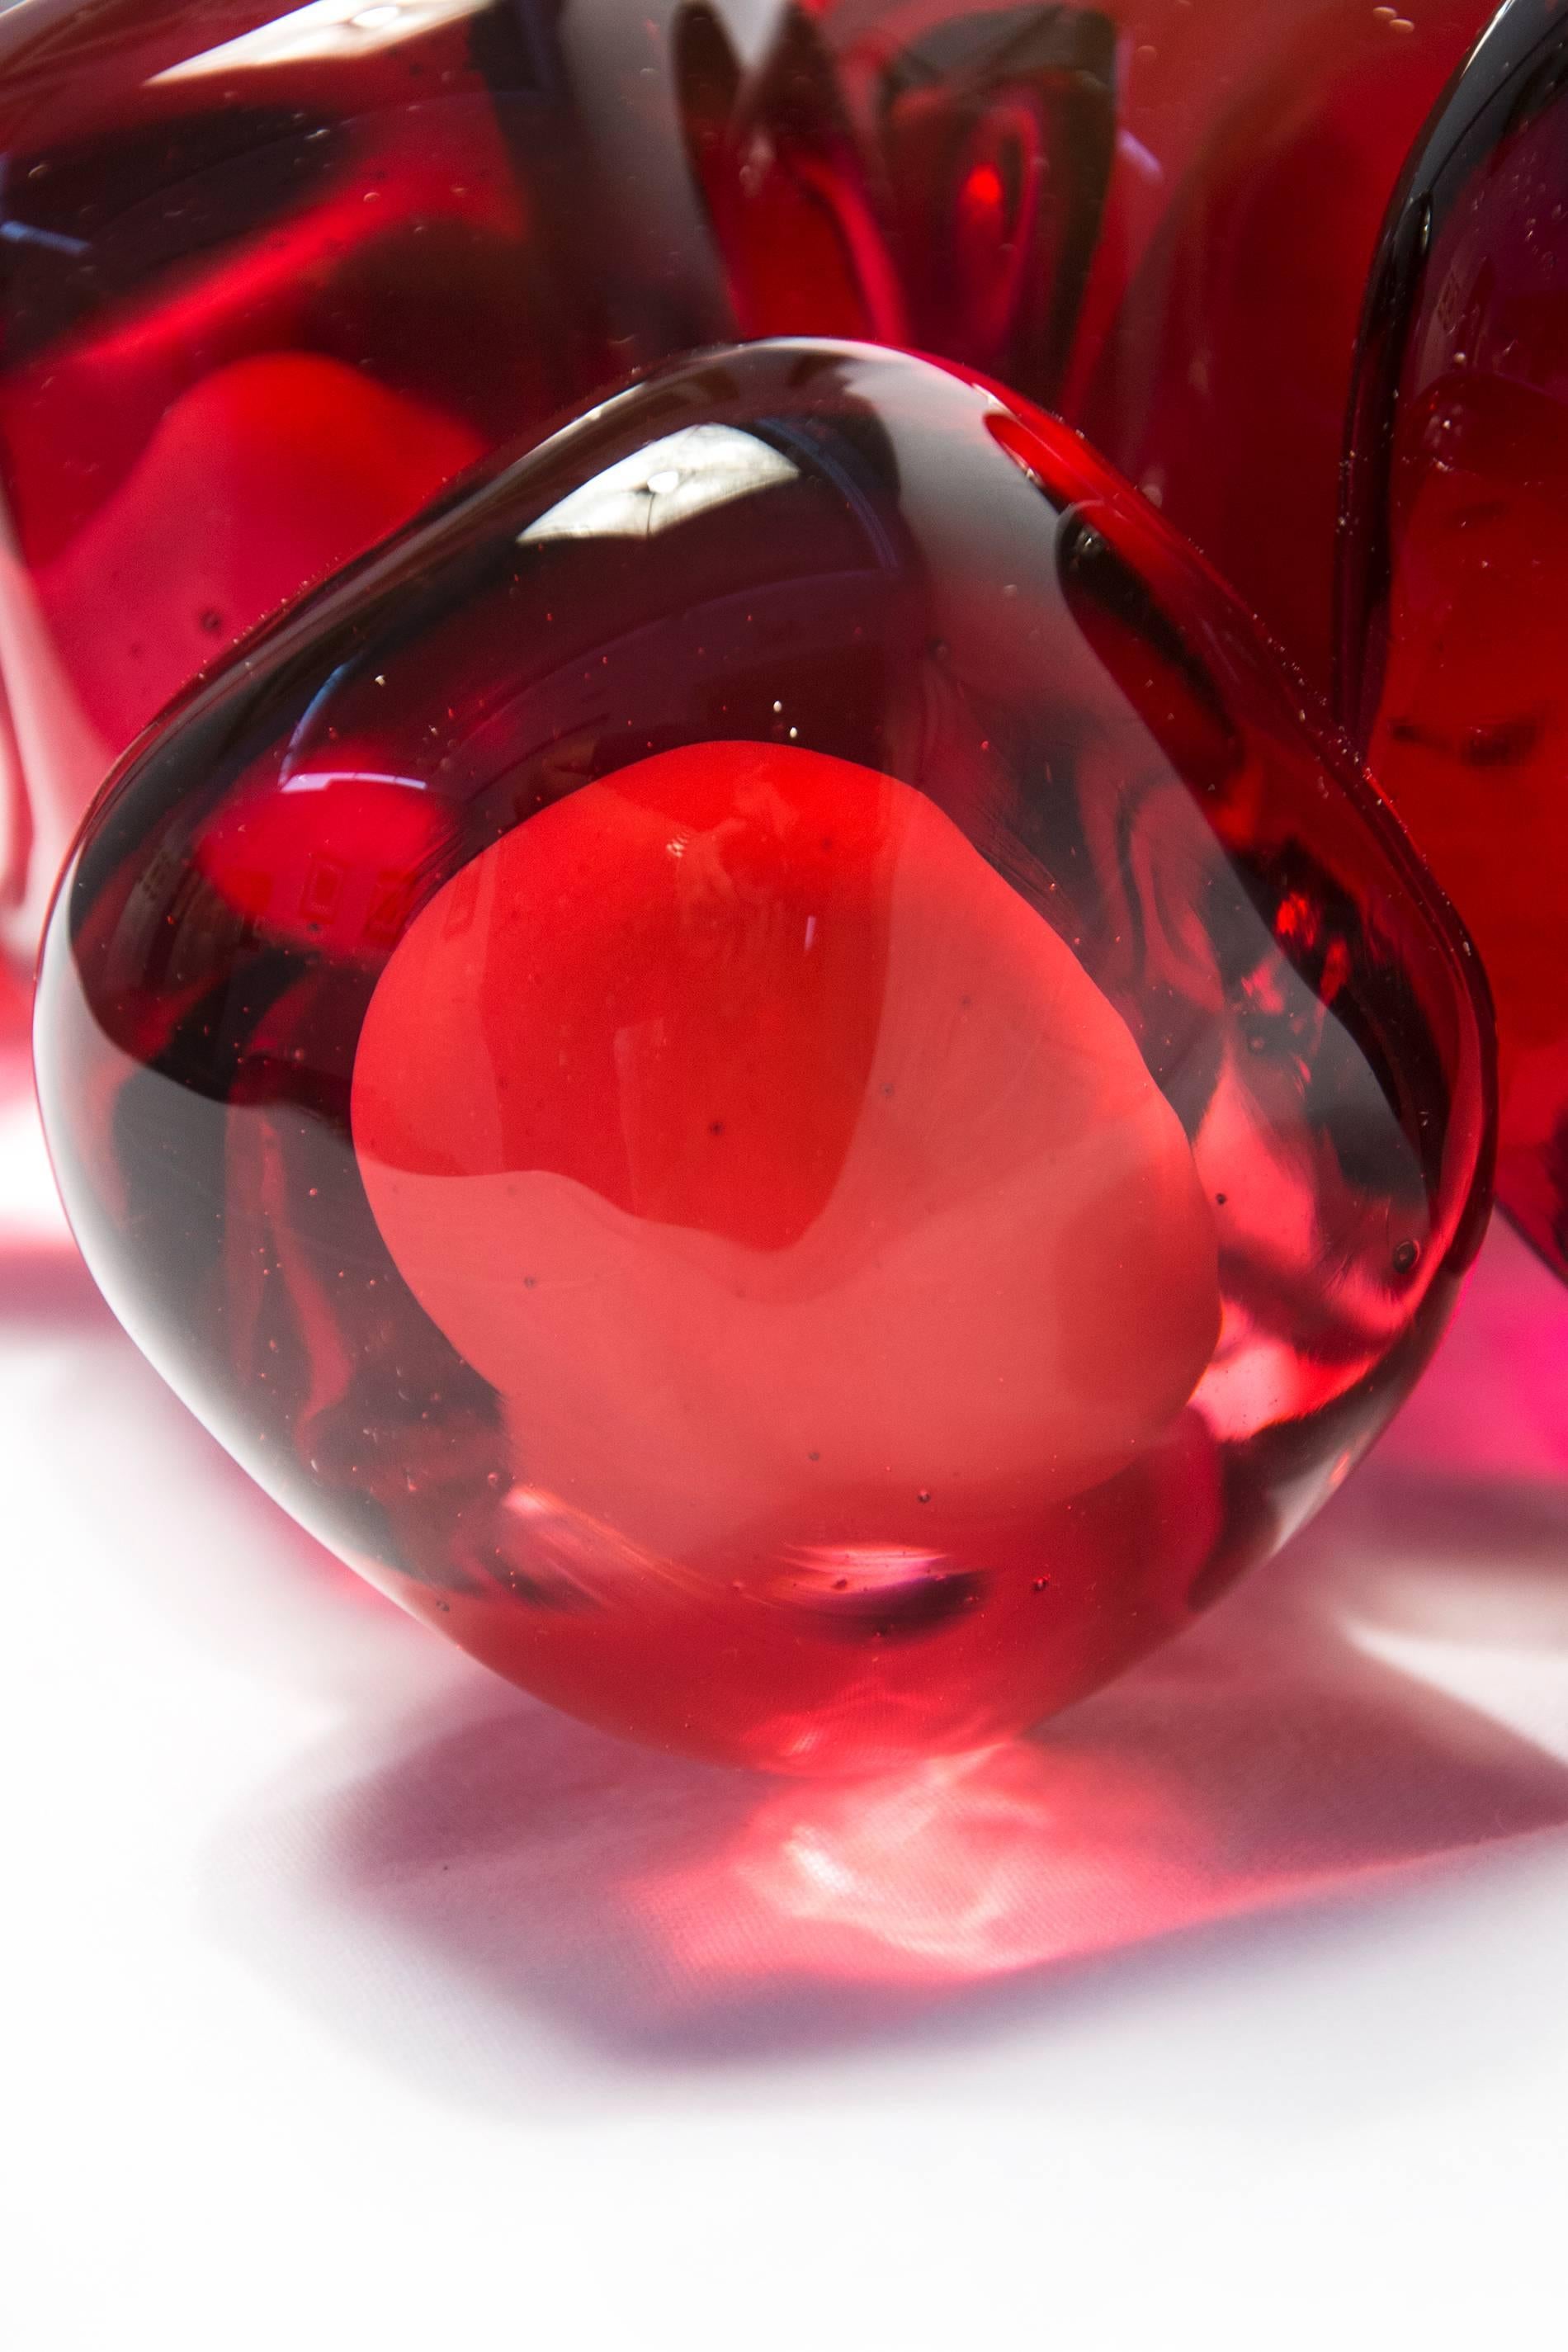 Die länglichen, sinnlichen Formen aus durchscheinendem, rotem Glas haben eine glatte, geschliffene Oberfläche wie die Frucht, die den Granatapfelkern umgibt. Ein einzelnes Samenkorn sitzt neben dem Cluster. Der Granatapfel steht für Reichtum, Glück